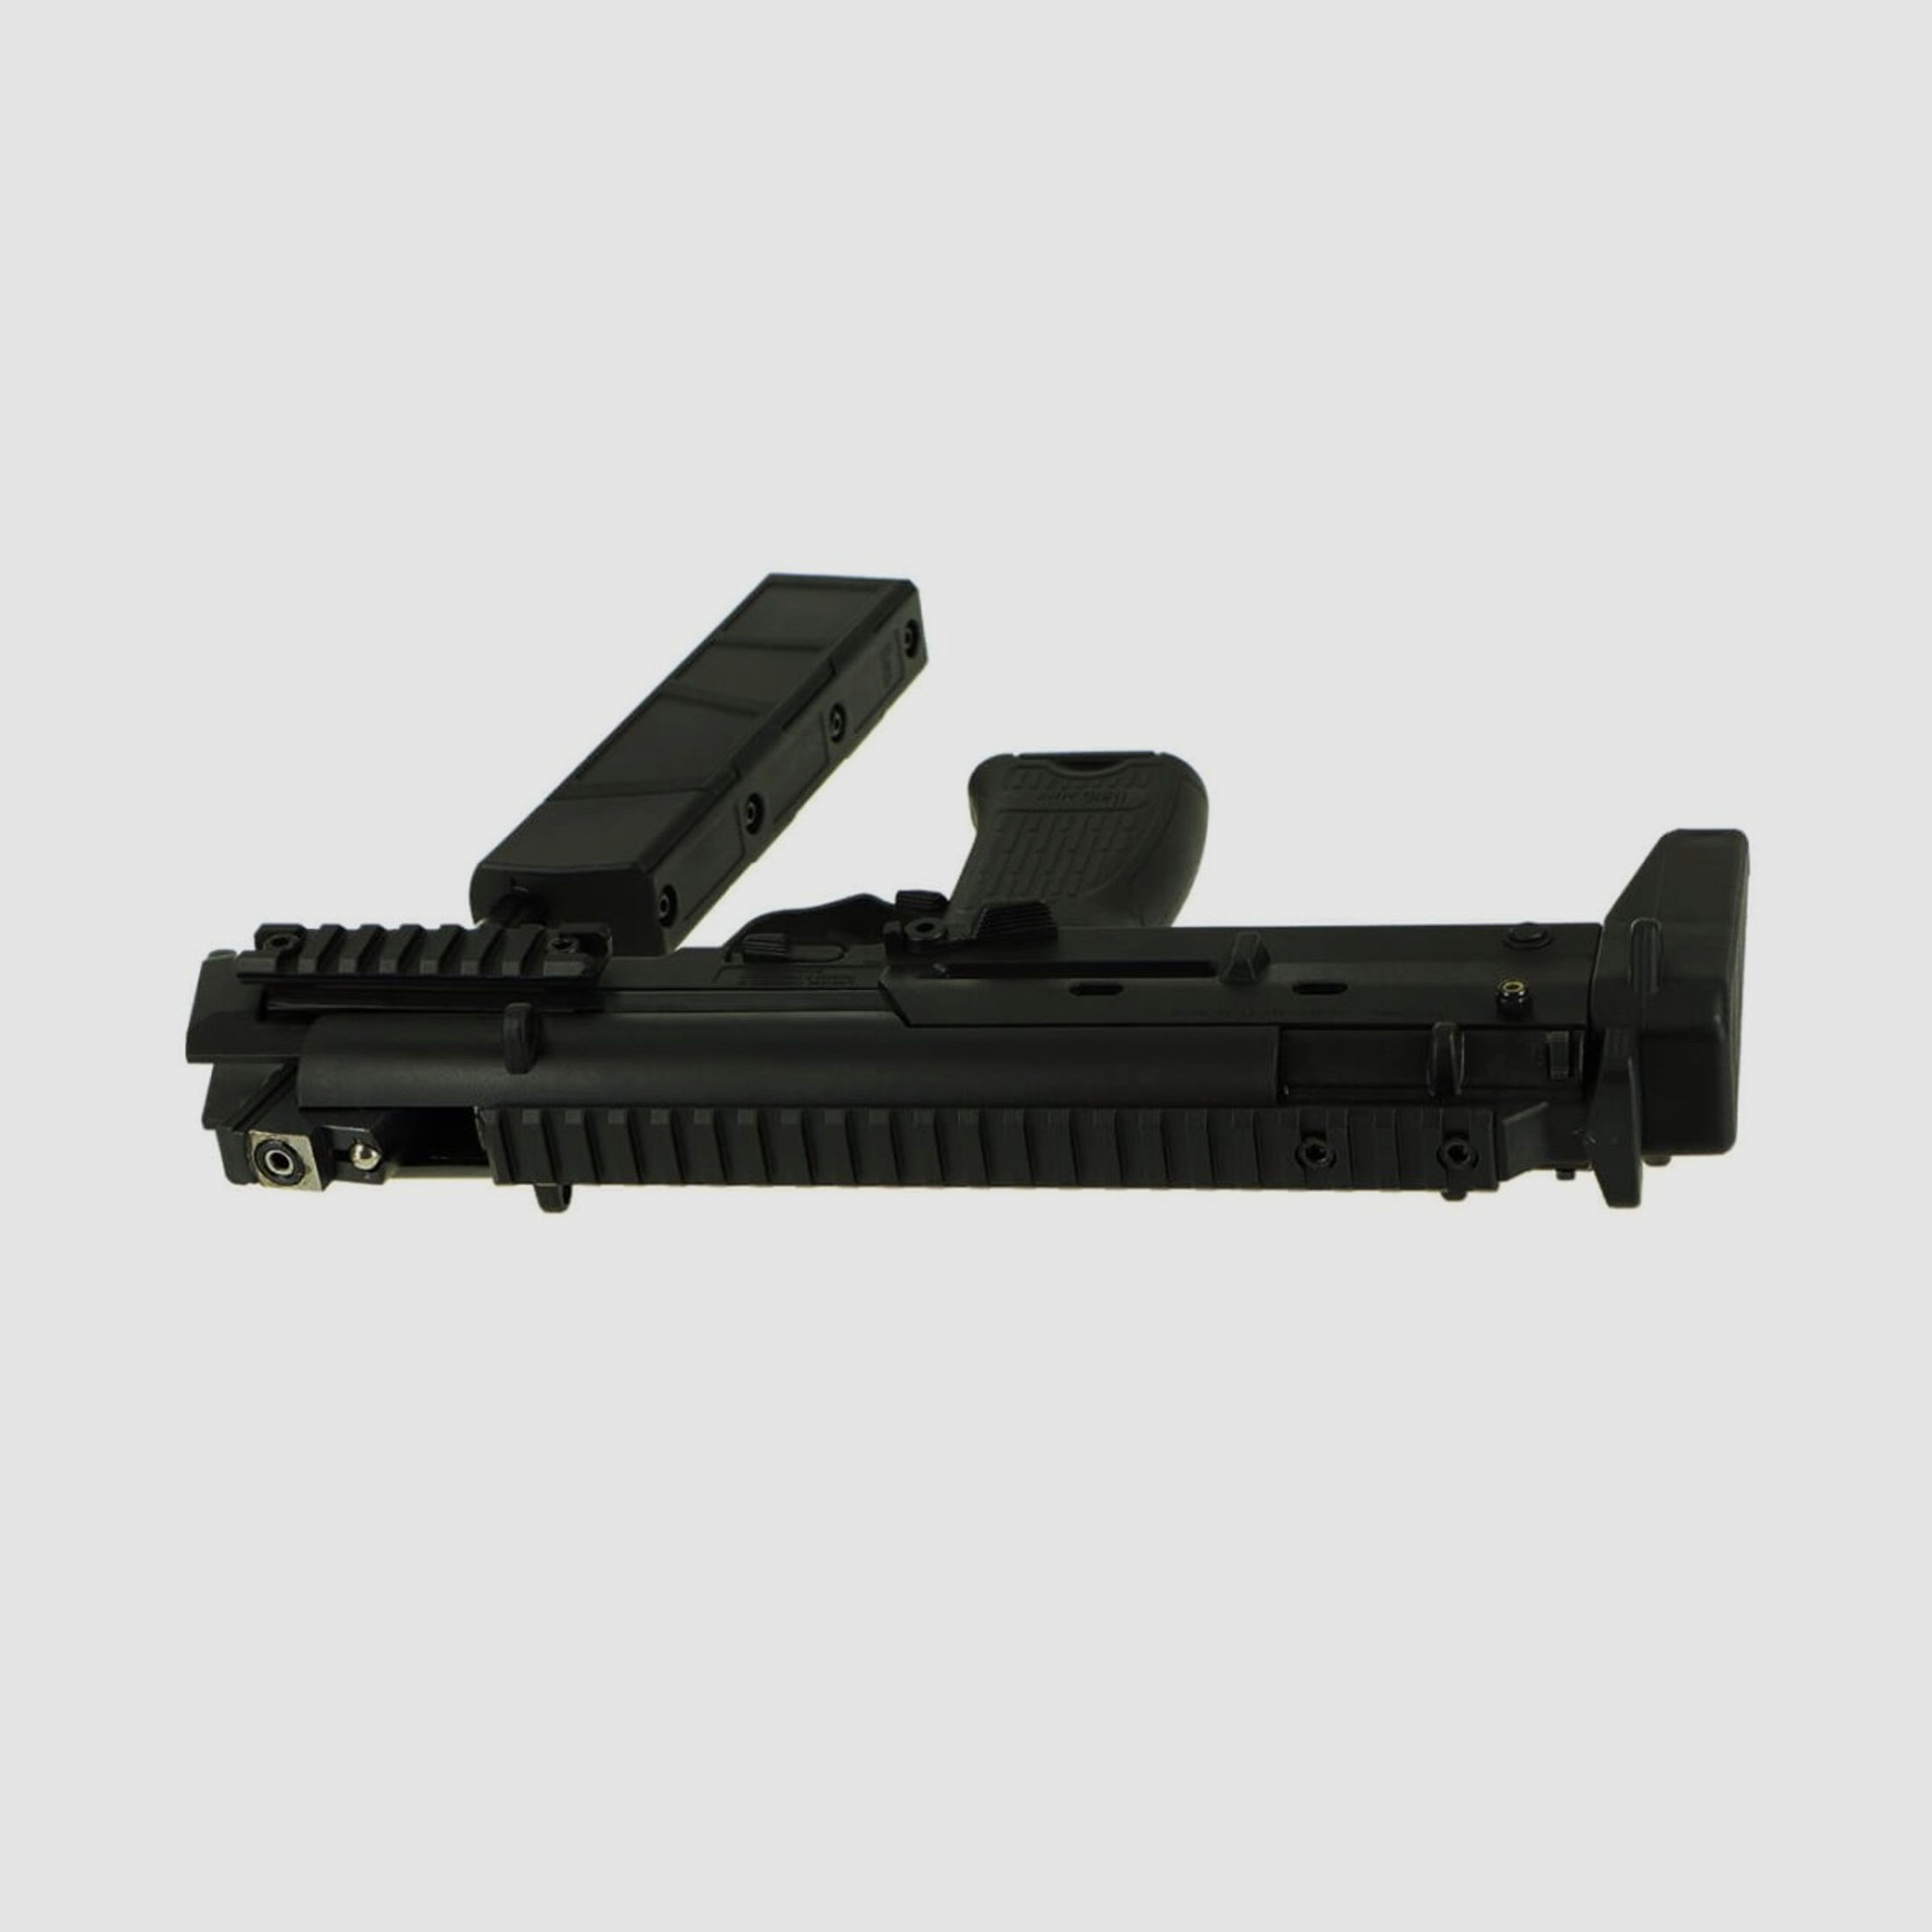 H&K MP7 SD, 4,5 mm Diabolo